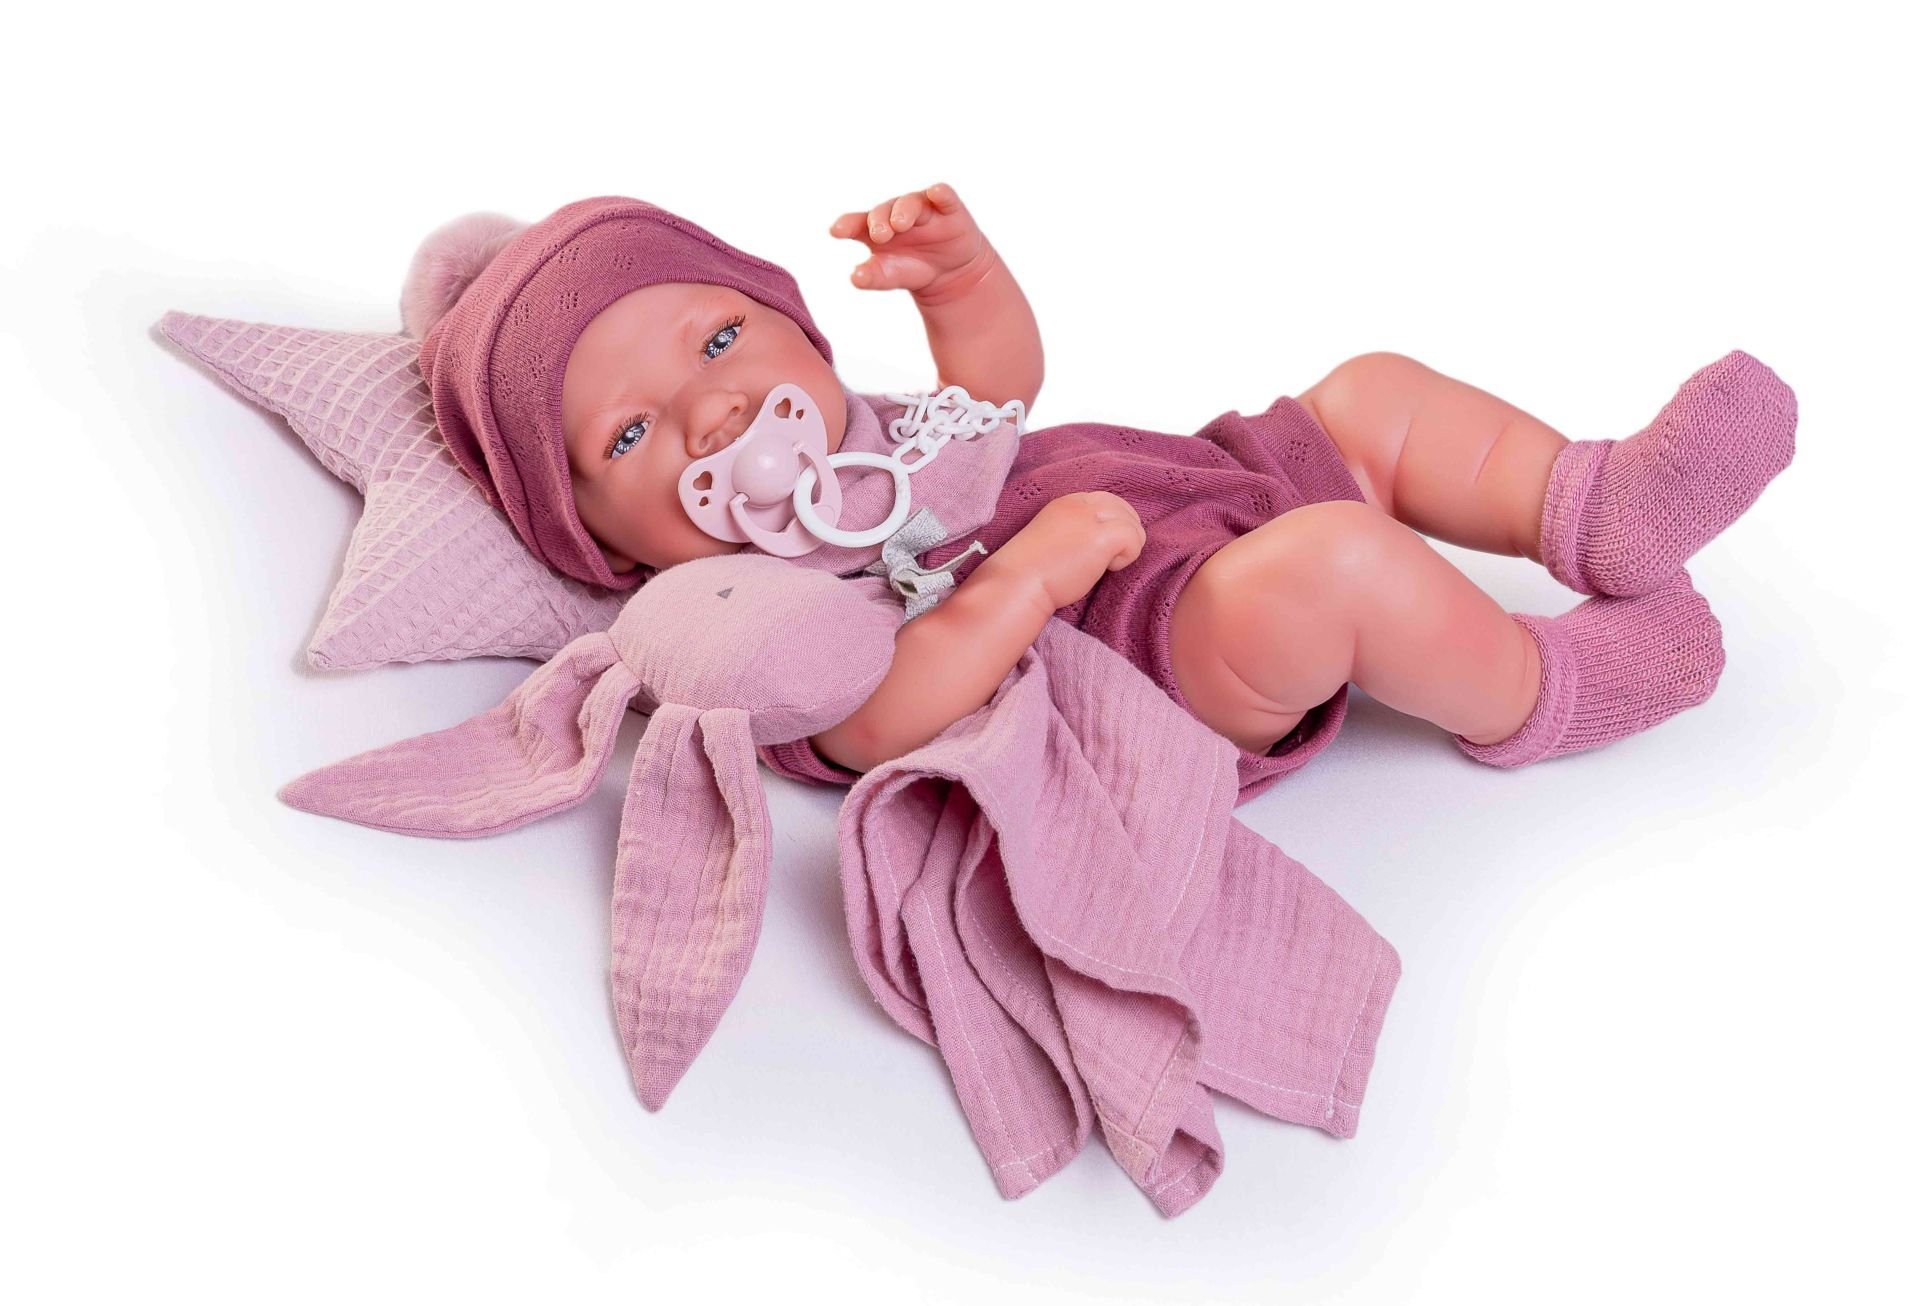 Levně Antonio Juan 50269 NACIDA - realistická panenka miminko s celovinylovým tělem - 42 cm